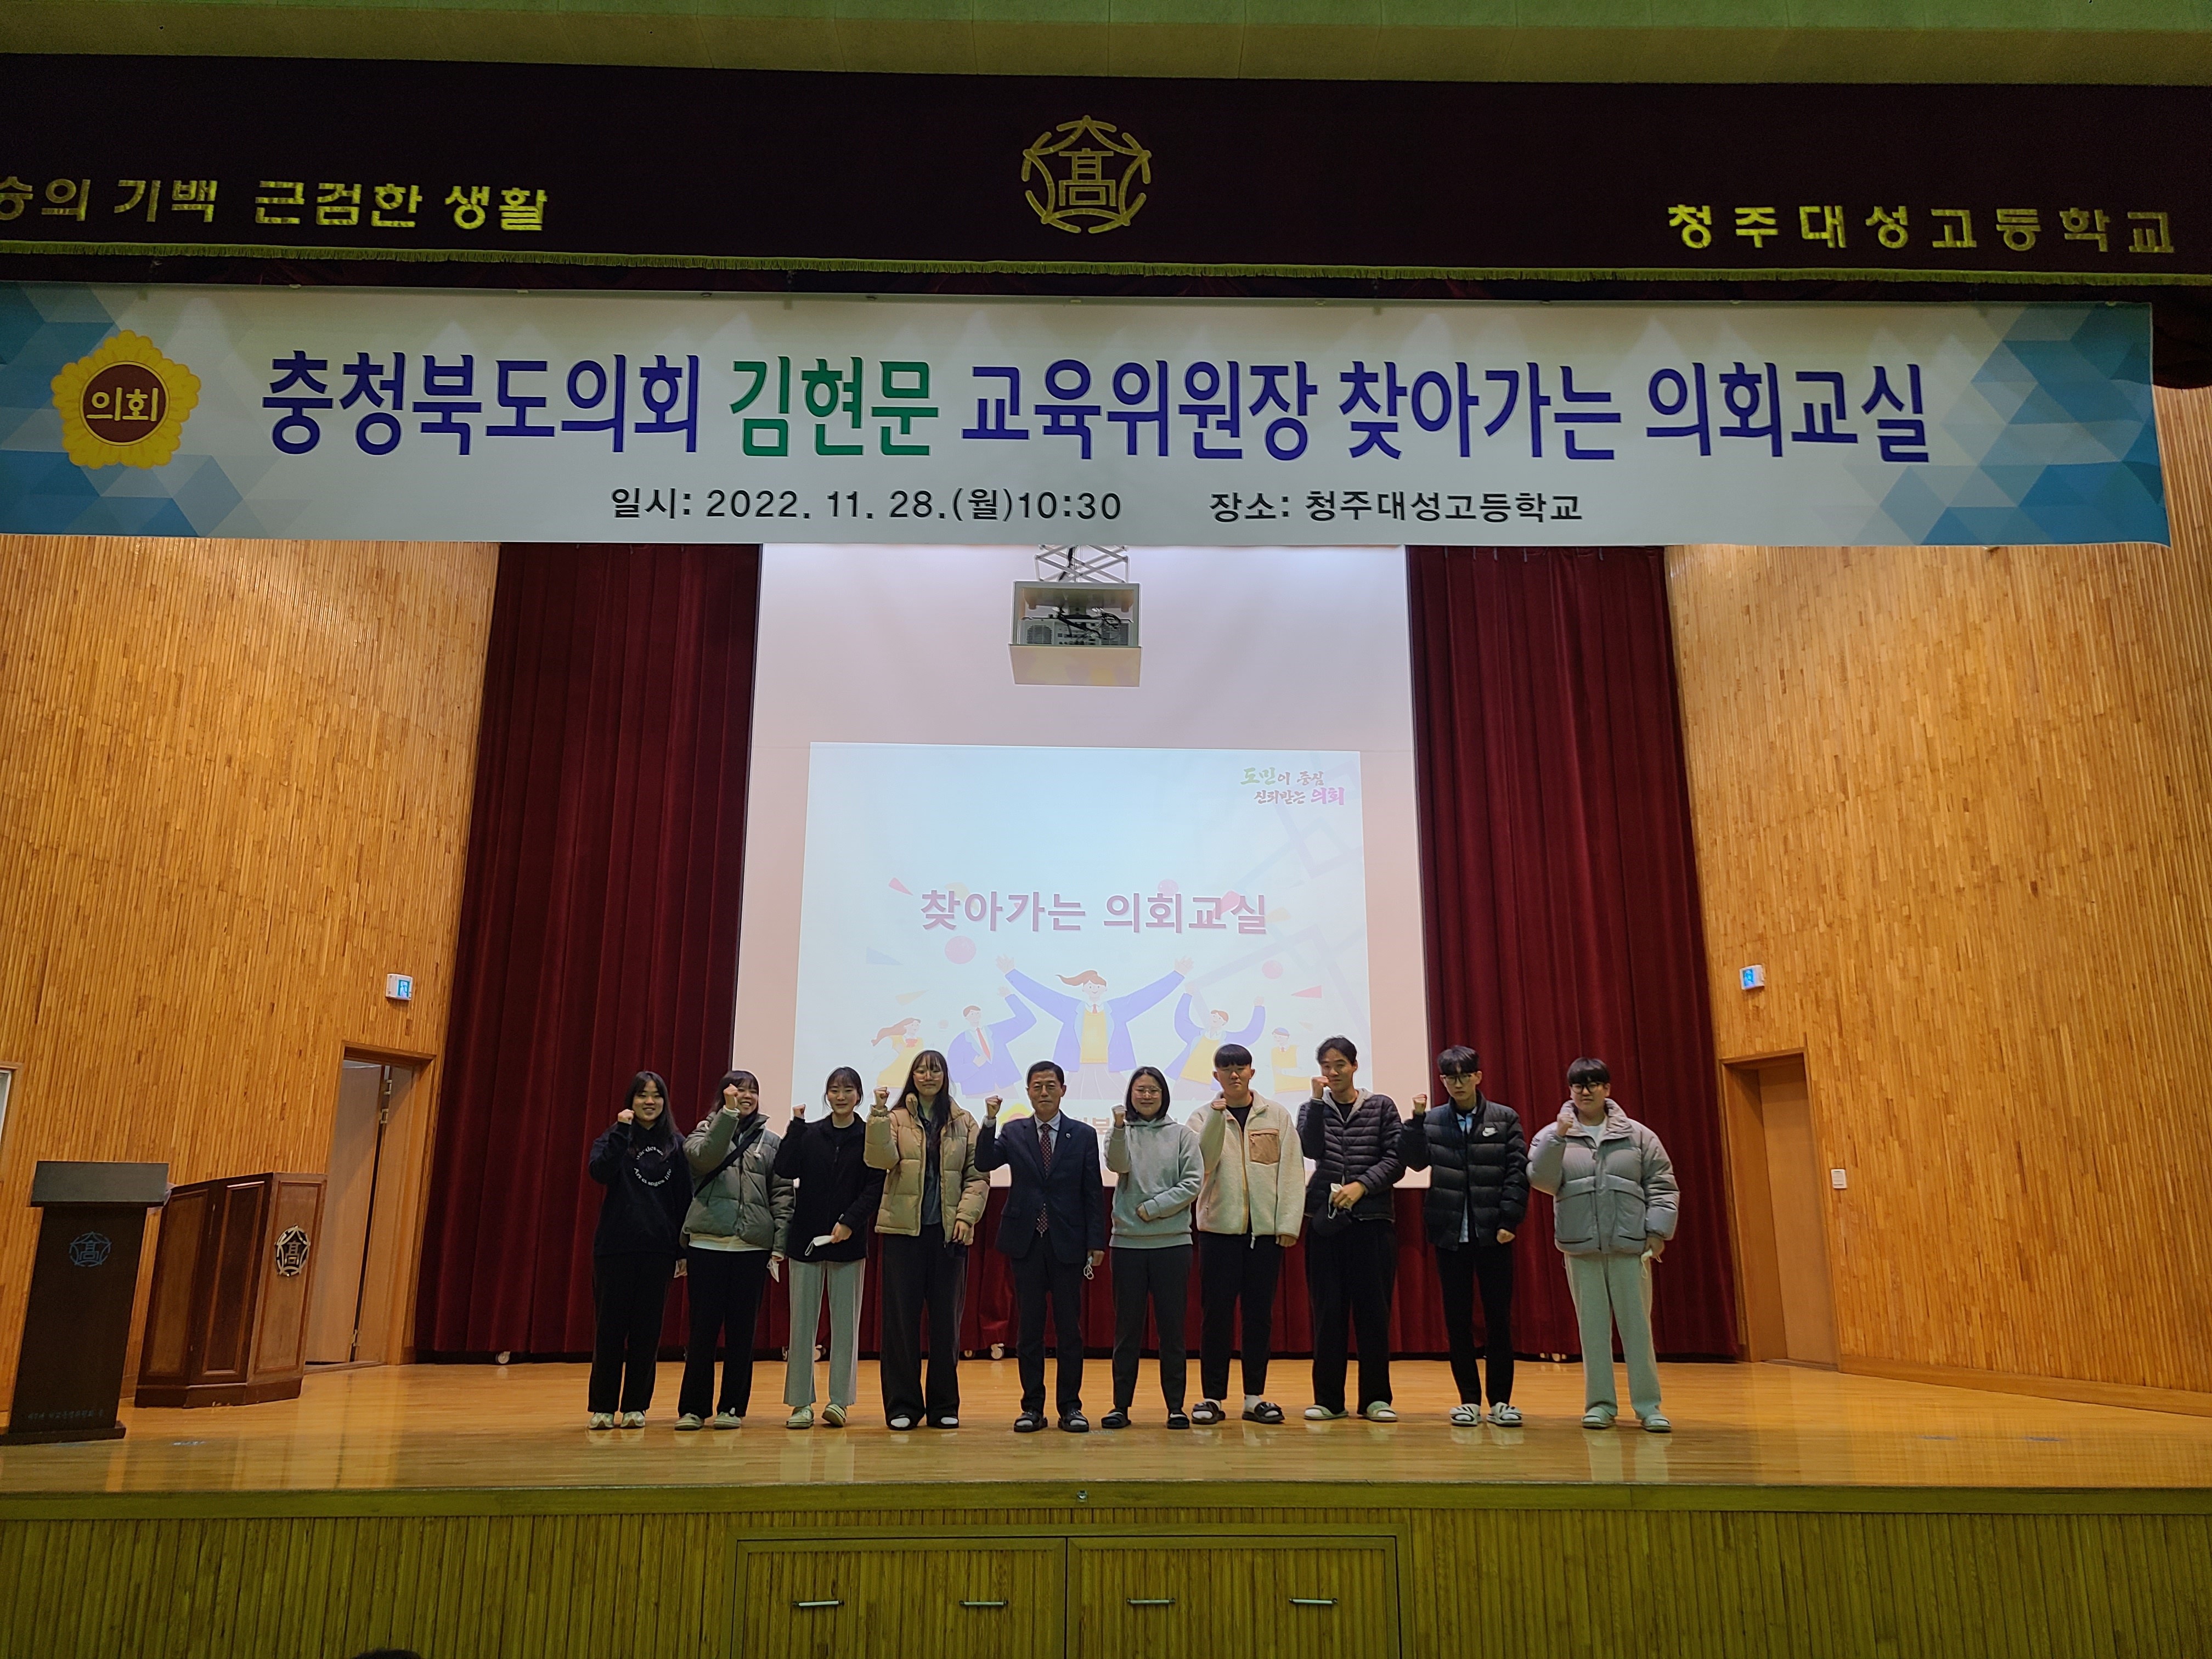 김현문 위원장, 찾아가는 의회교실 행사(청주 대성고등학교) - 2